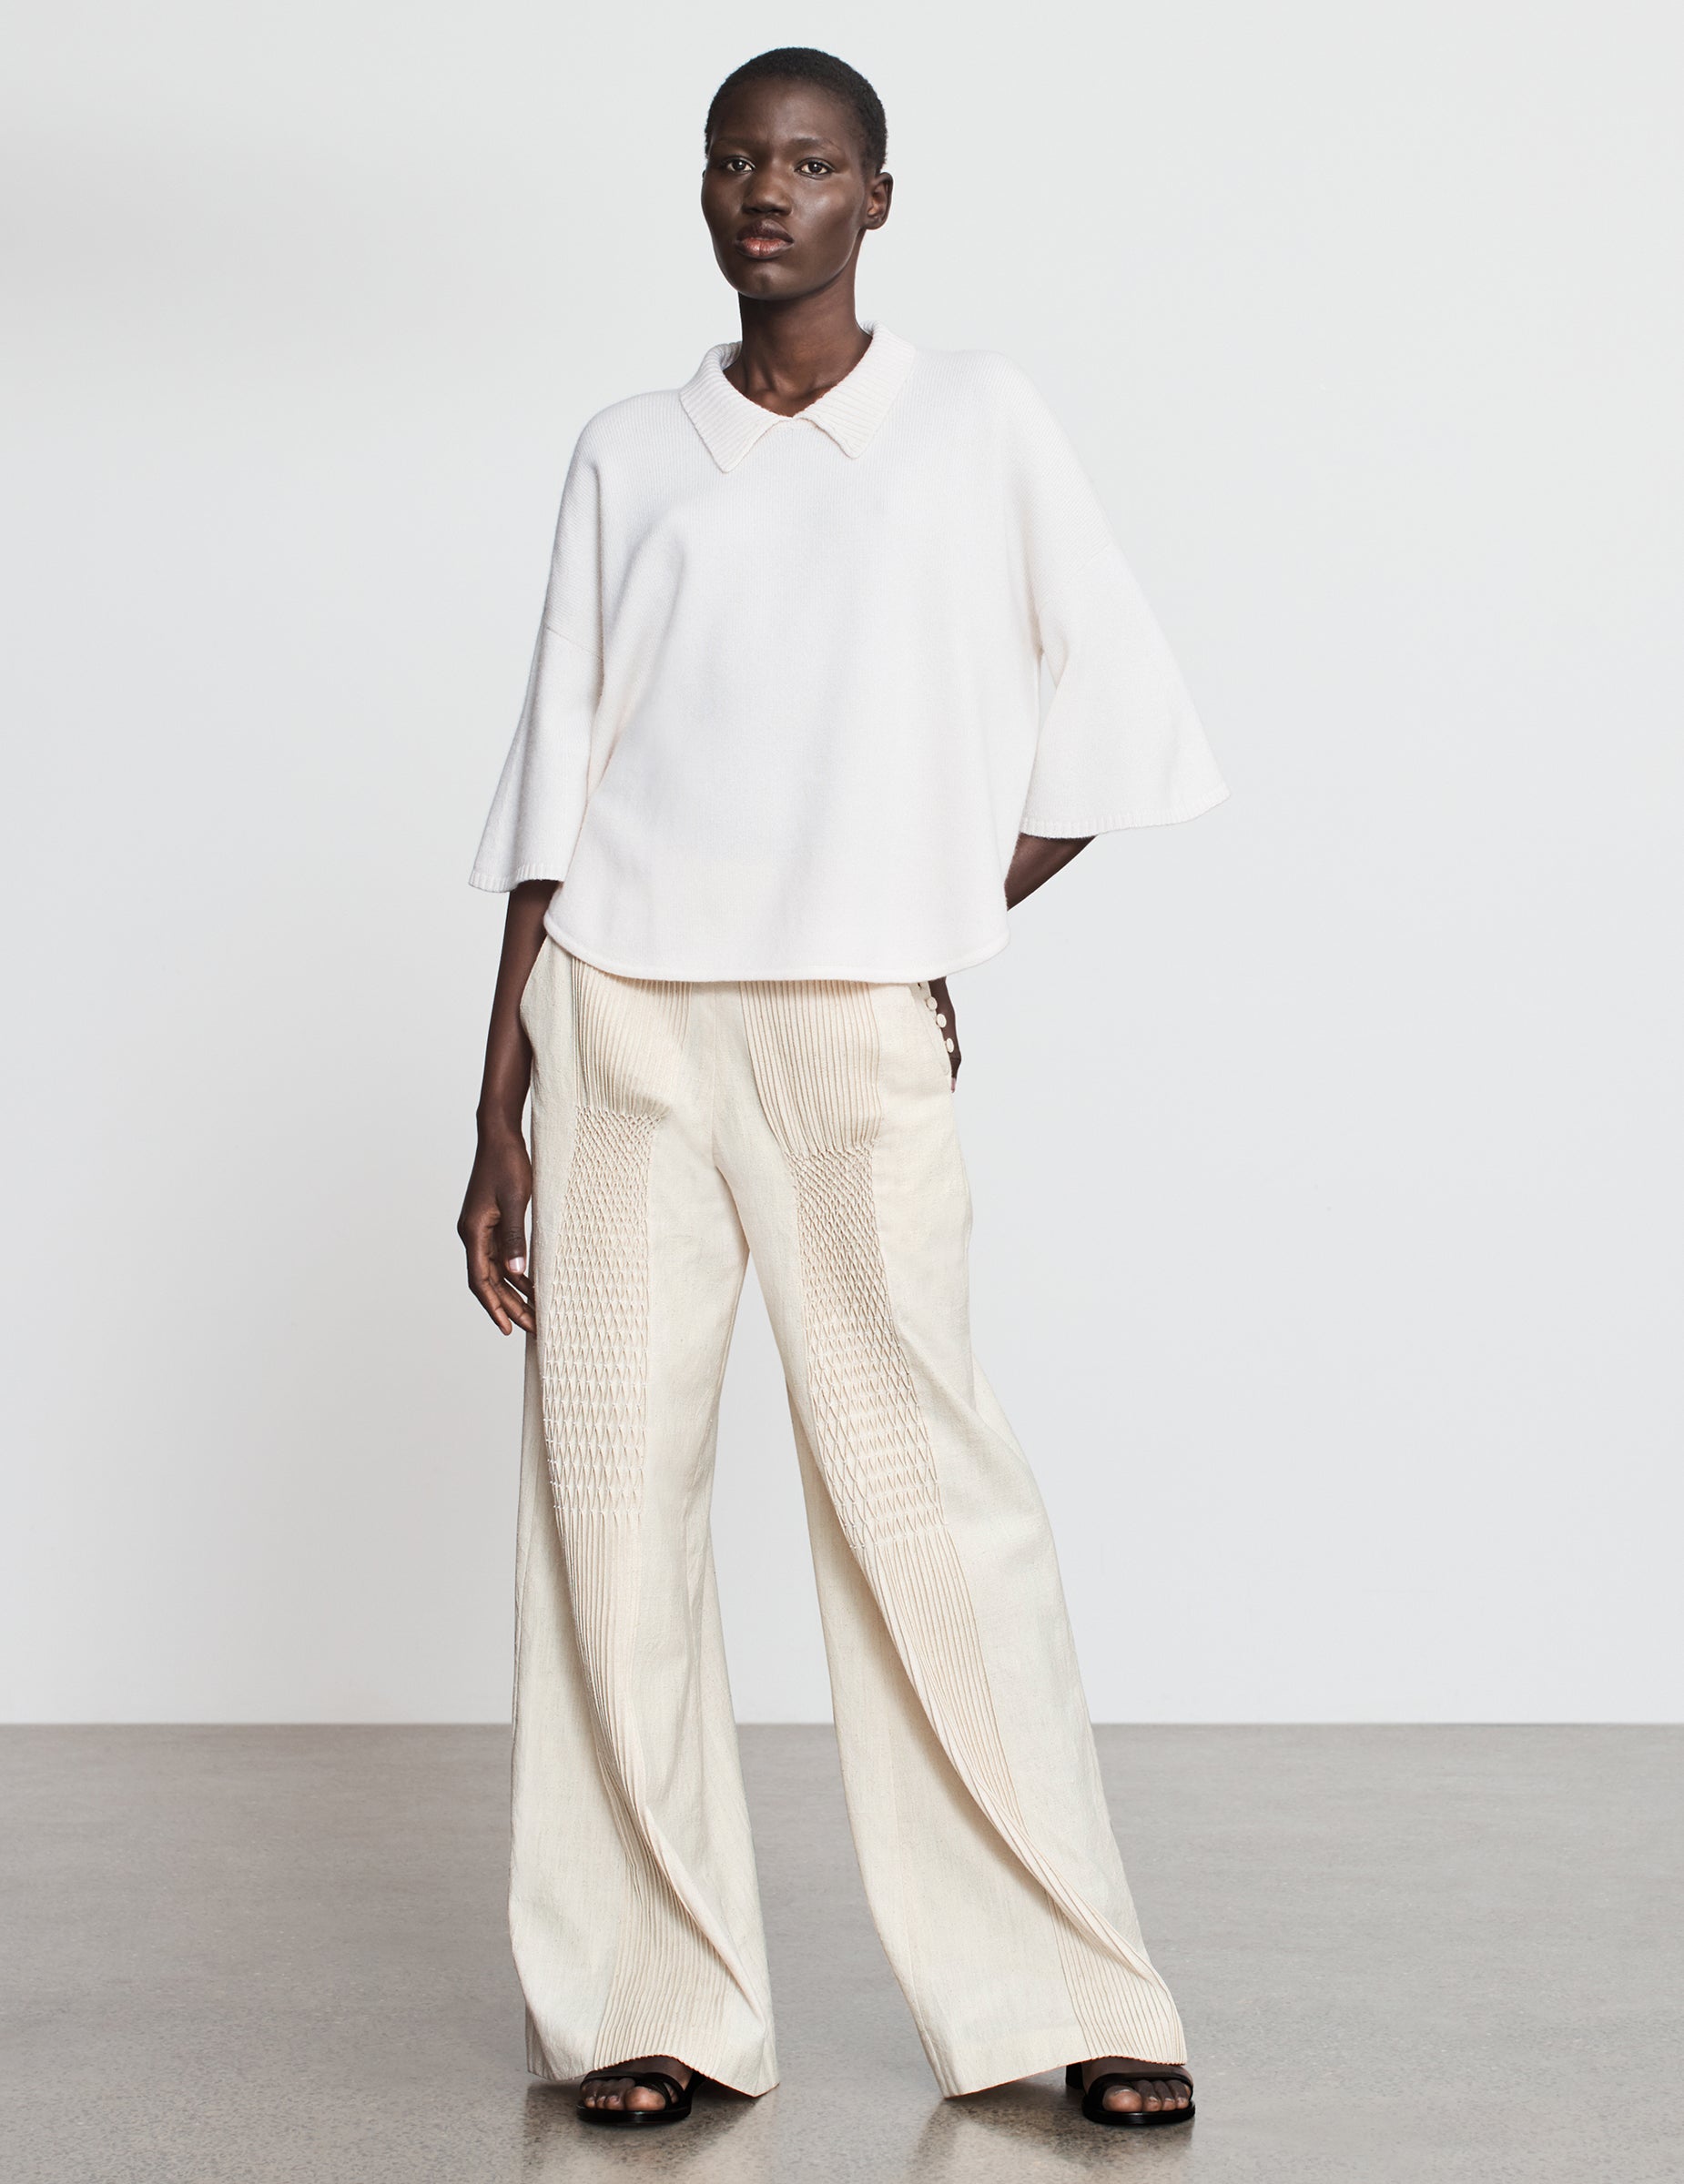 Buy Cream Trousers  Pants for Women by BANI WOMEN Online  Ajiocom